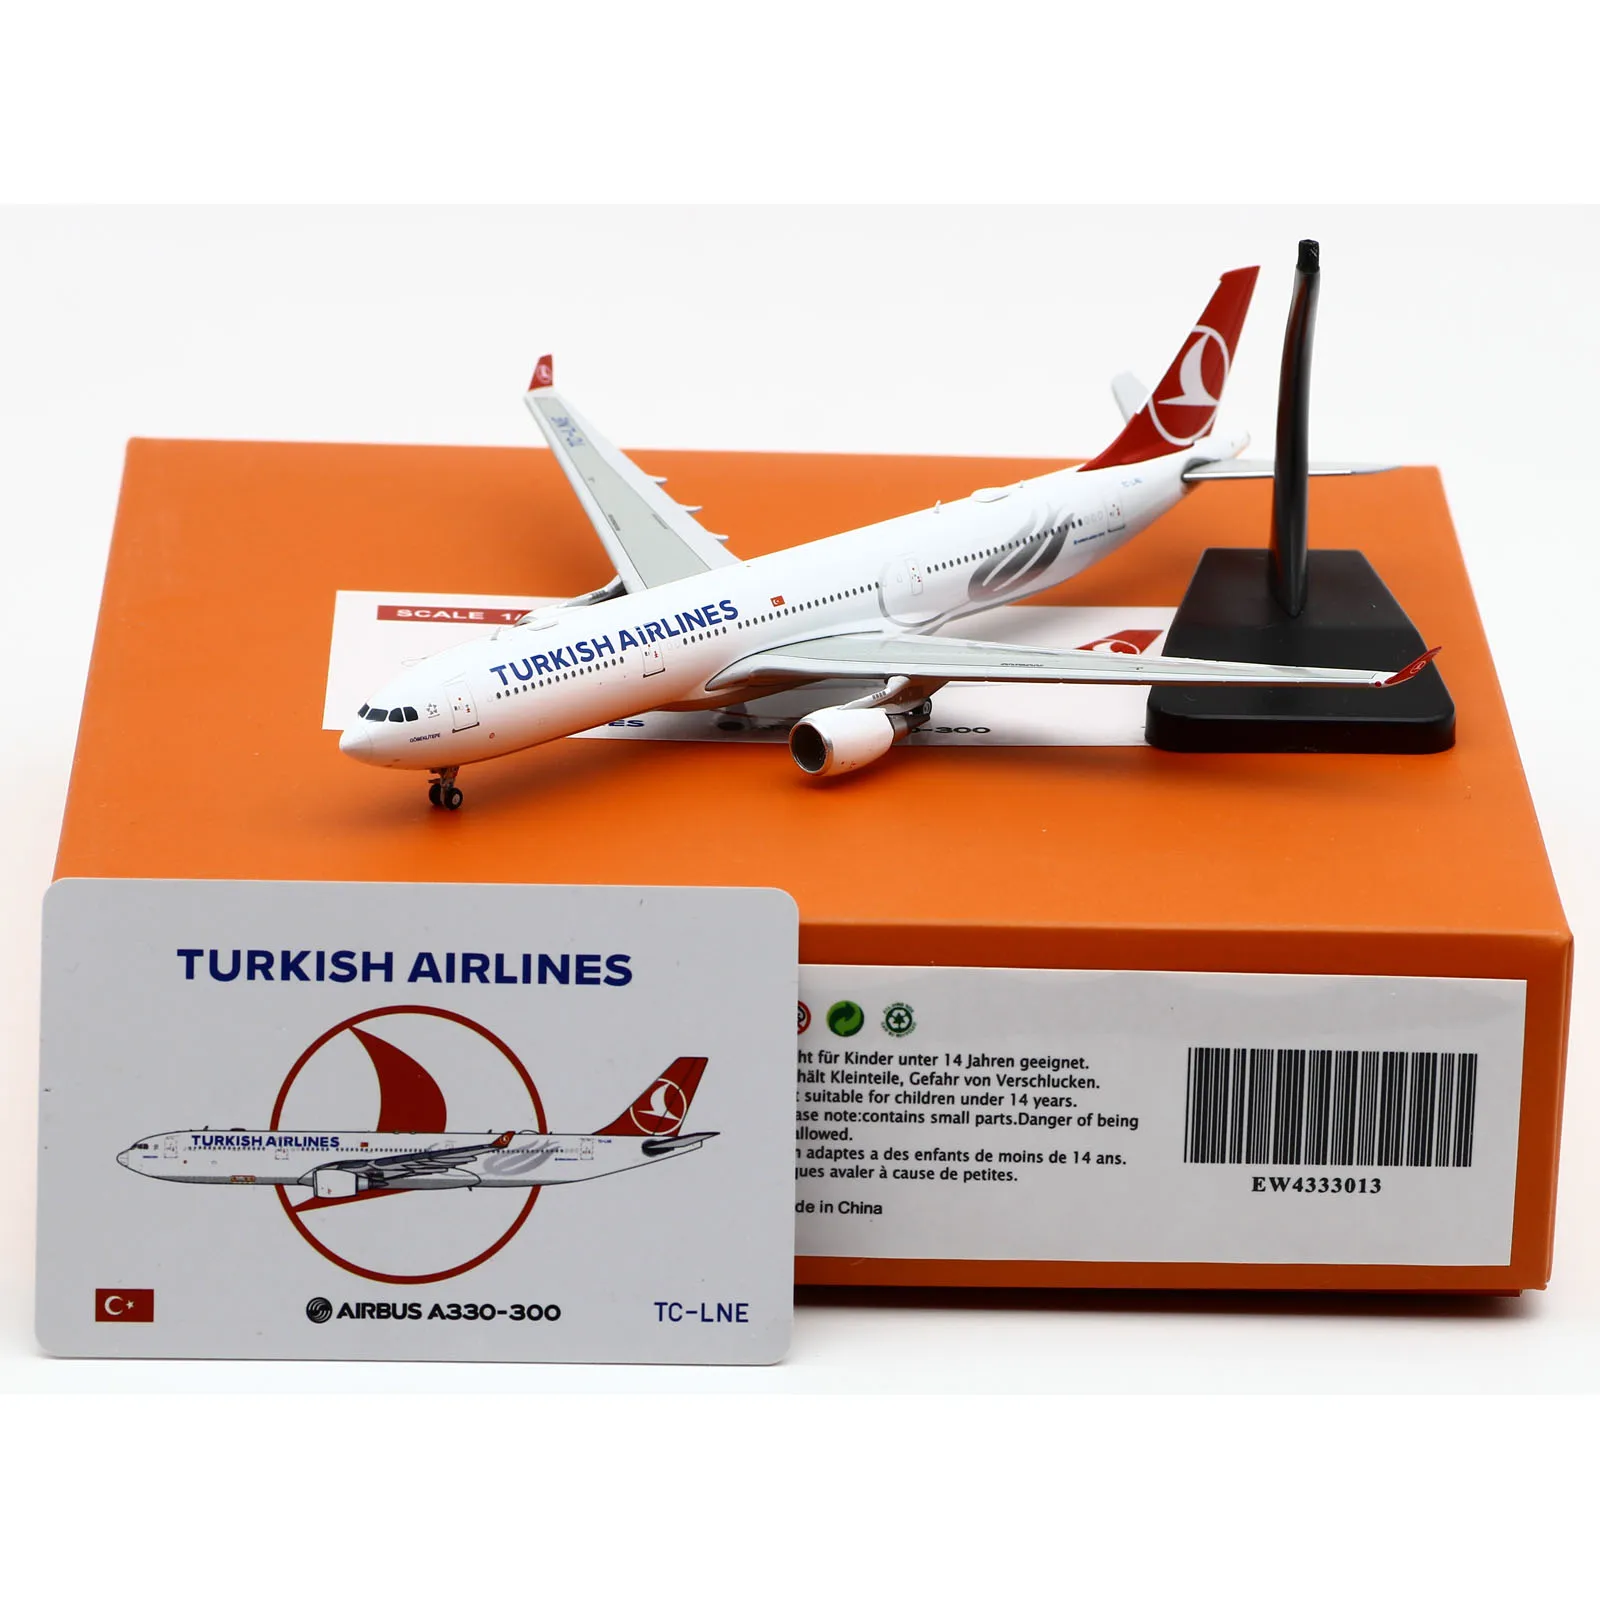 moo4333013-alliage-collection-avion-cadeau-jc-ailes-1-400-turkish-airlines-airbus-a330-300-moule-sous-pression-avion-jet-modele-tc-lne